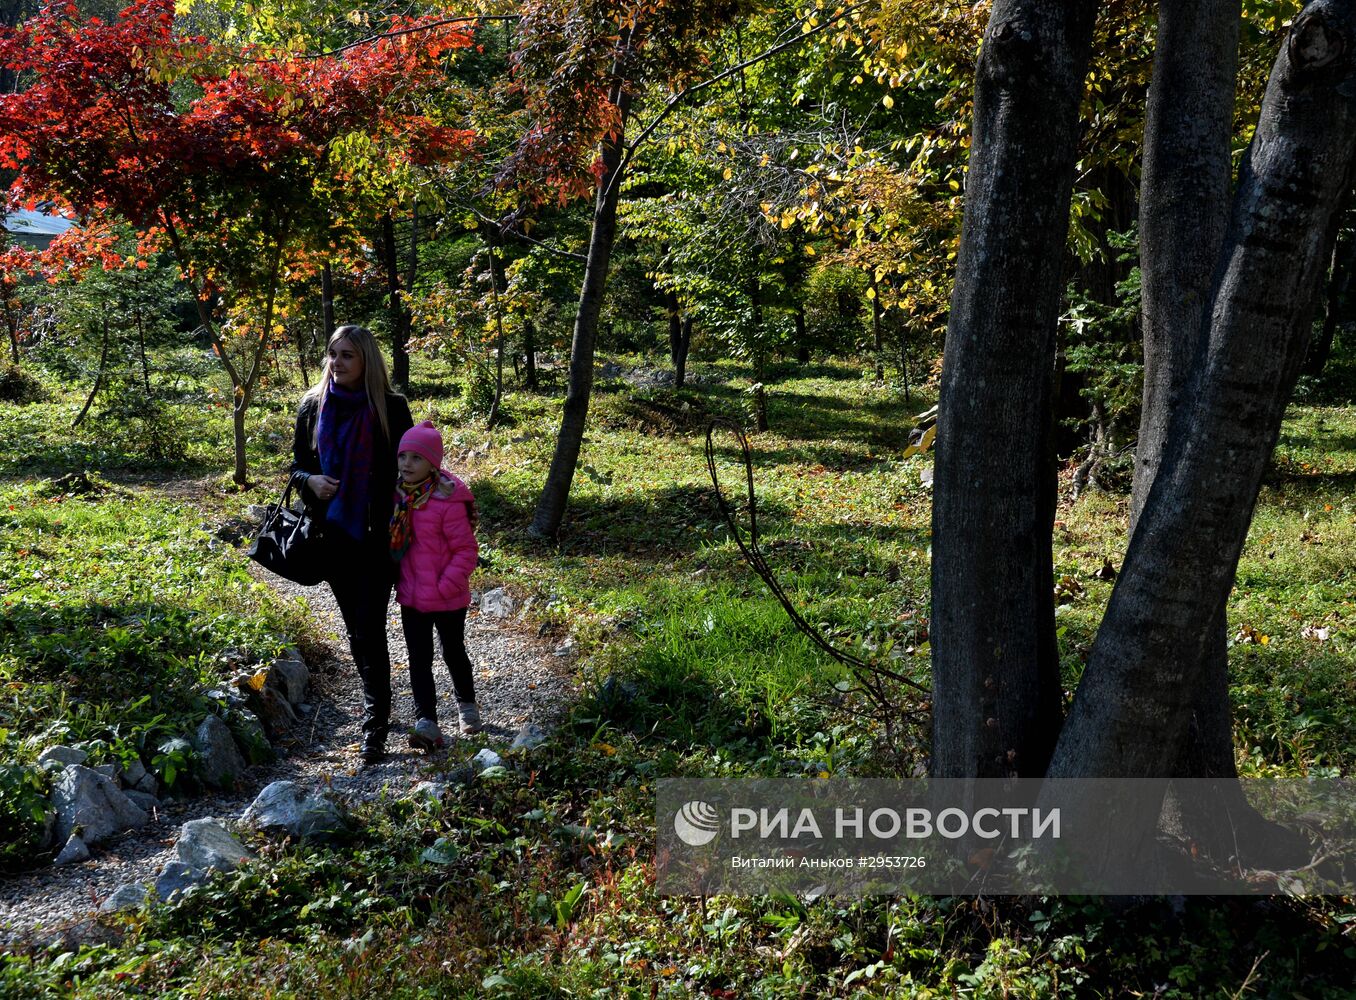 Семейный отдых в Ботаническом саду во Владивостоке